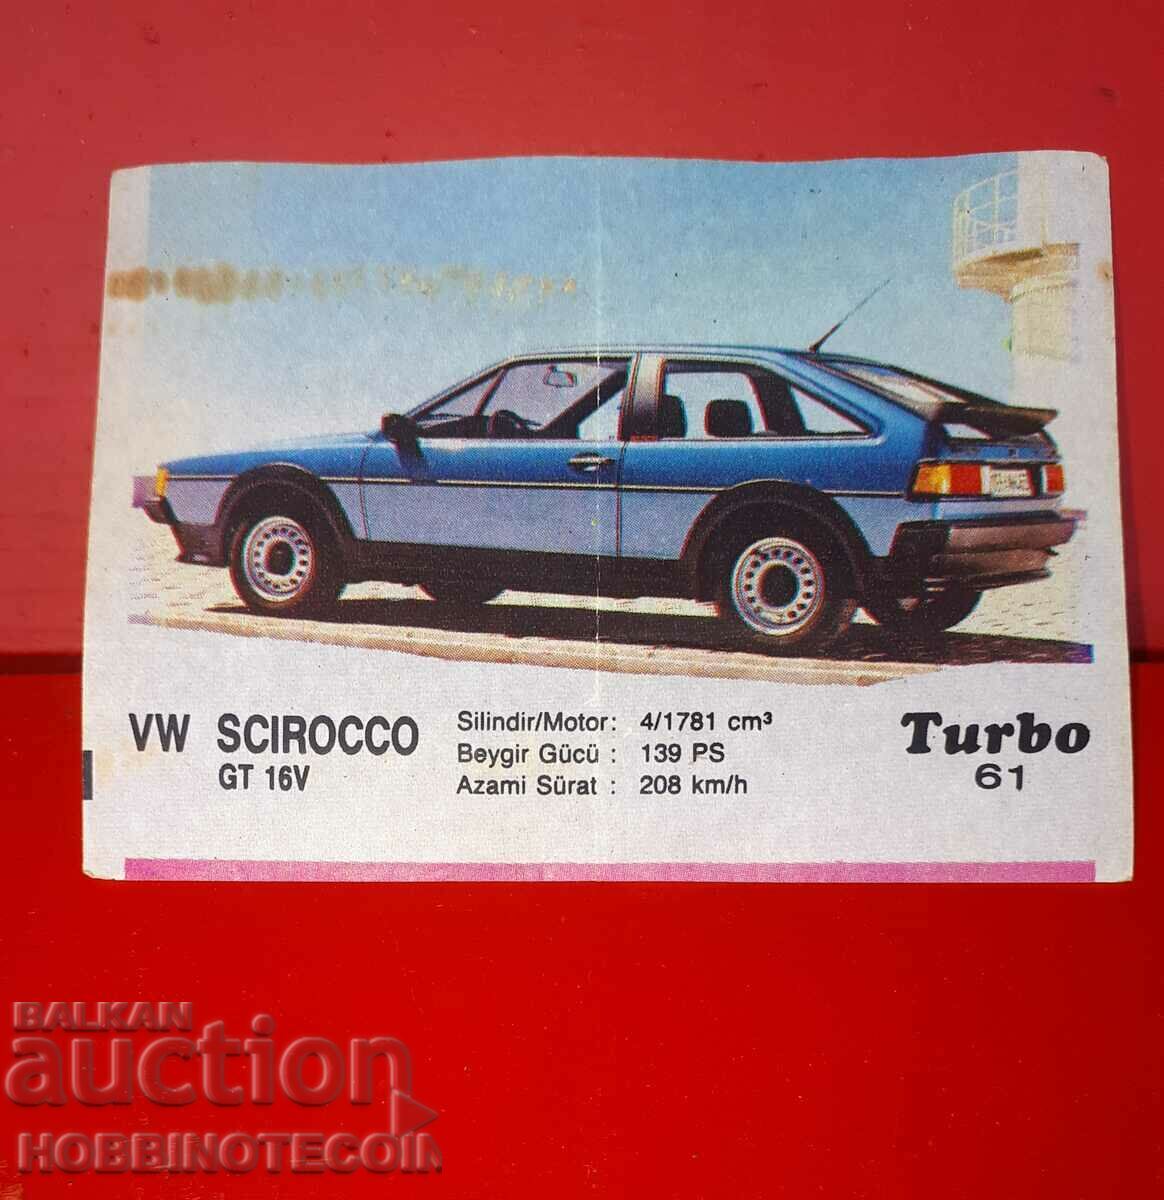 ΕΙΚΟΝΑ TURBO TURBO N 61 VW SCIROCCO GT 16V